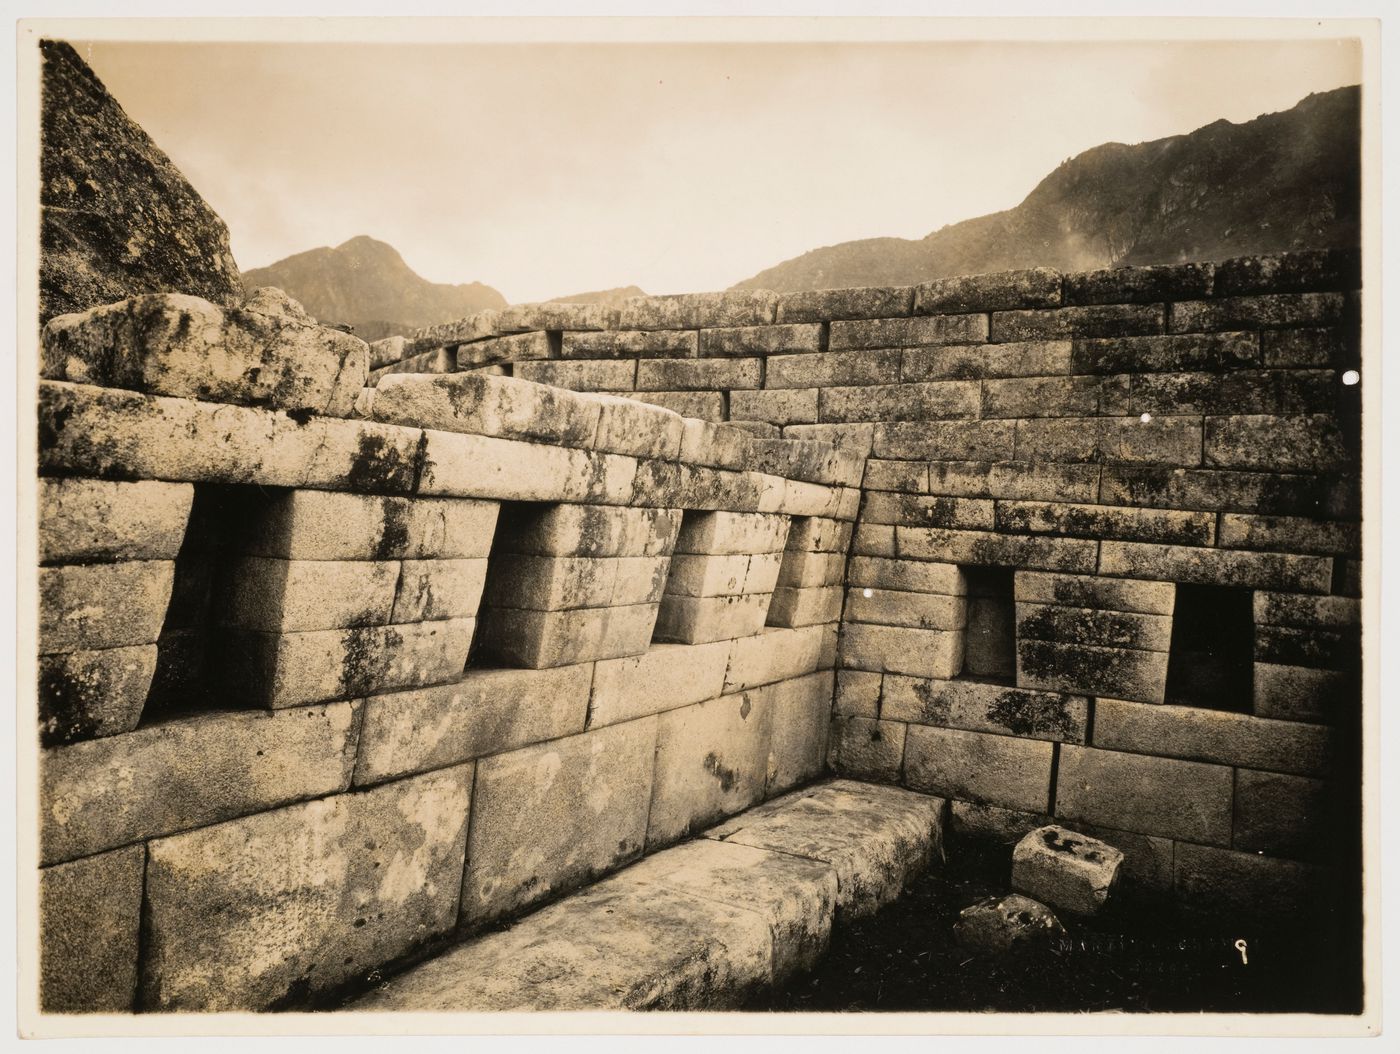 Interior view of an unidentified building, Machu Picchu, Peru